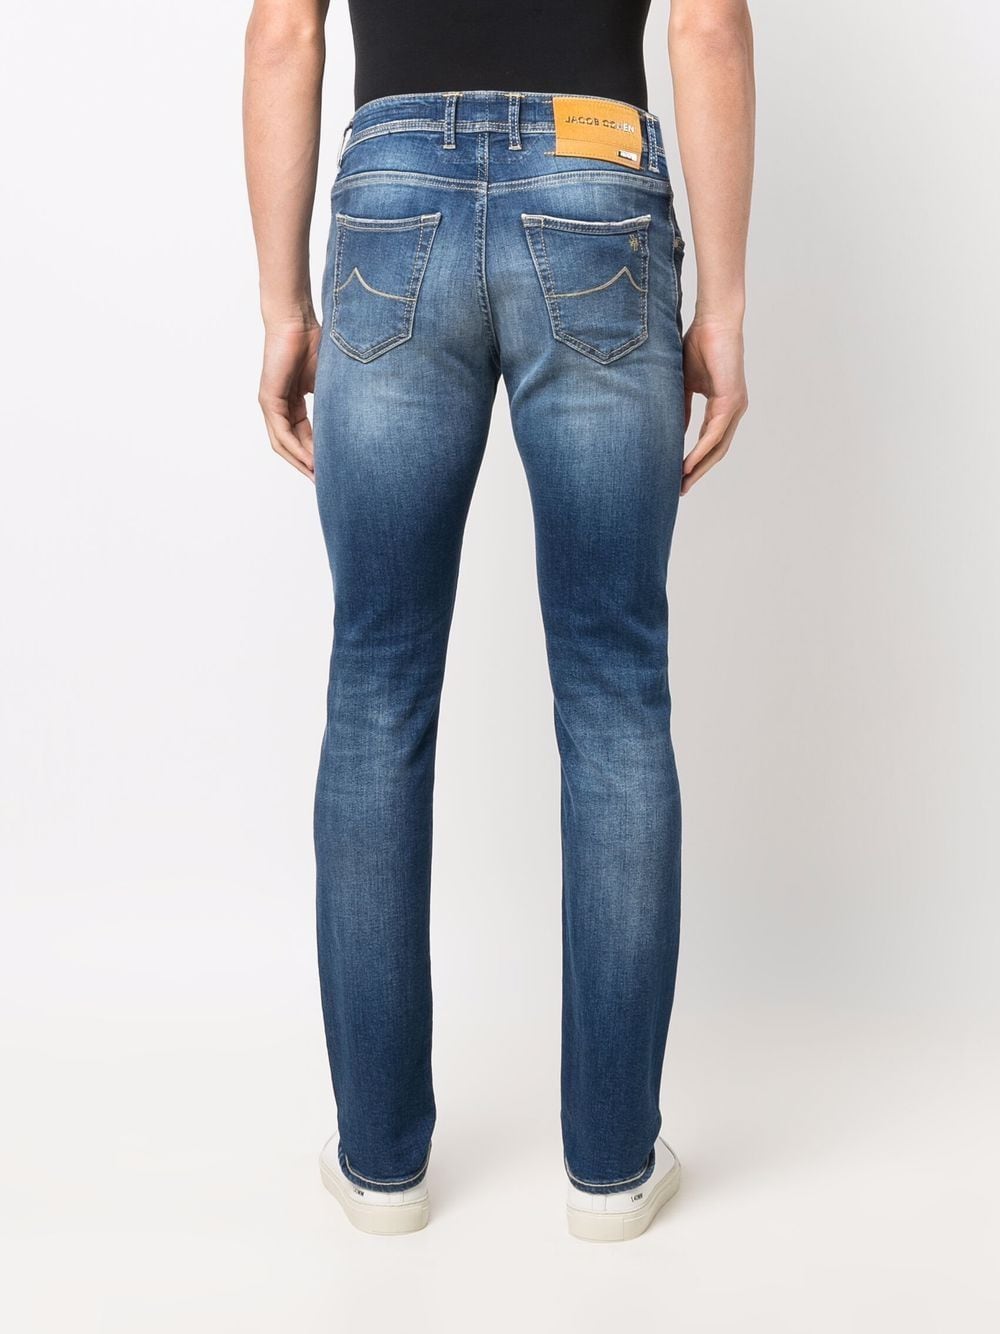 фото Jacob cohen джинсы кроя слим с эффектом градиента